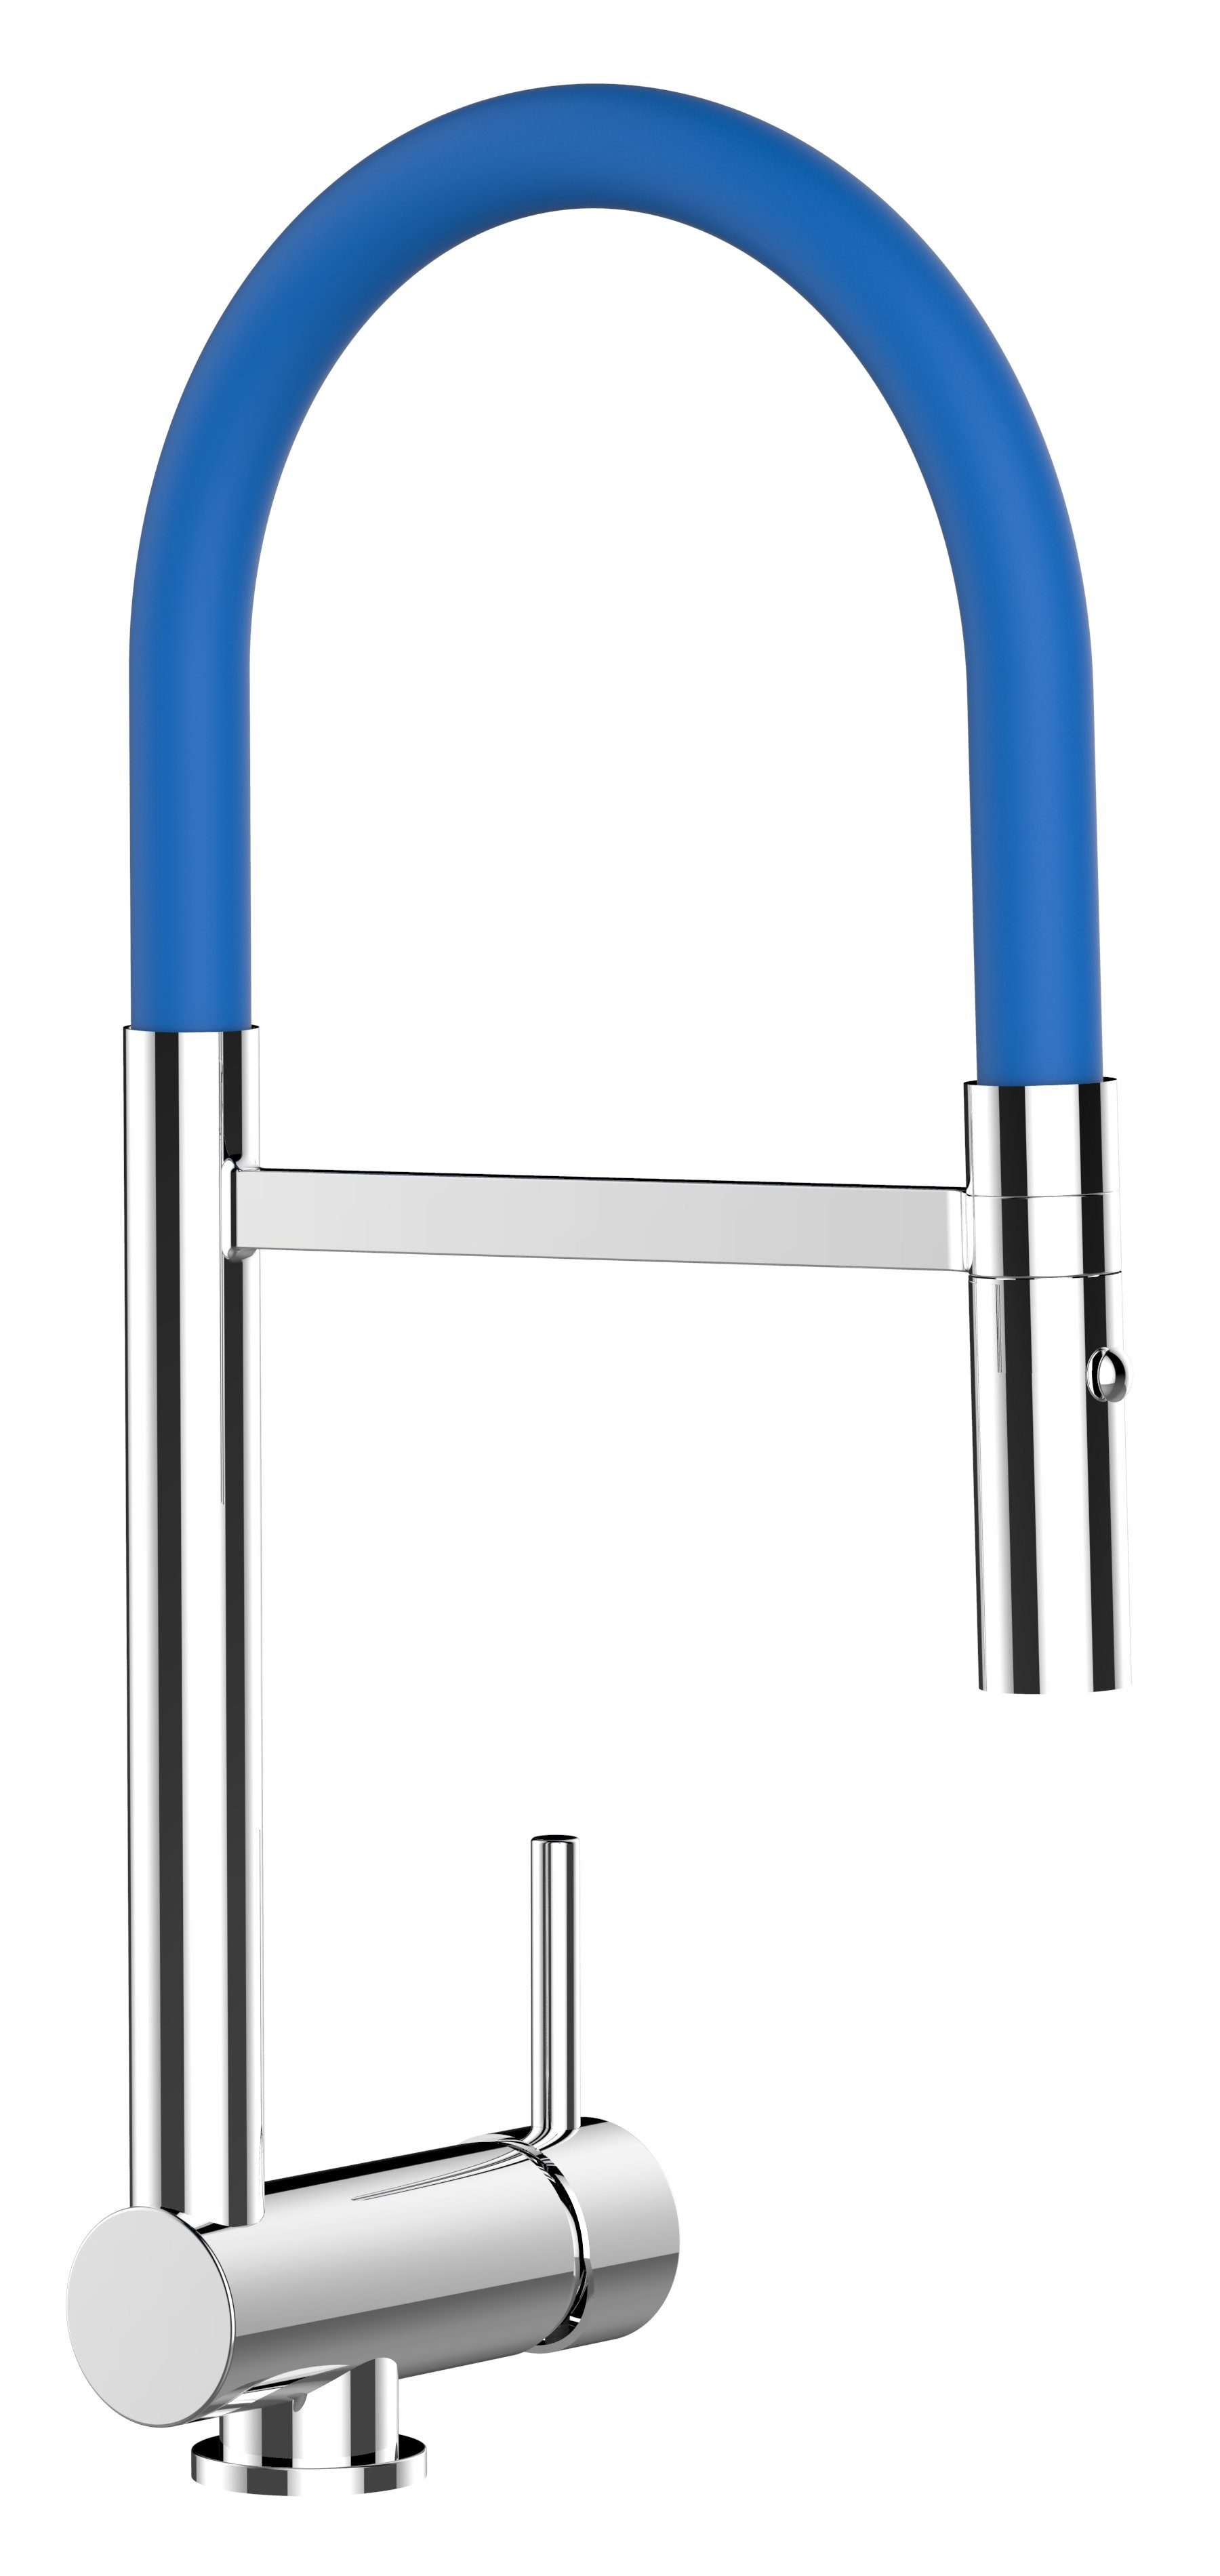 VIZIO Küchenarmatur Unterfenster Armatur 6 cm mit abnehmbarer 2 strahl Brause Hochdruck, Messing verchromt, abgeschwenkt nur 60mm hoch, Sicherungstaste gegen unbeabsichtigtes Abkippen Blau